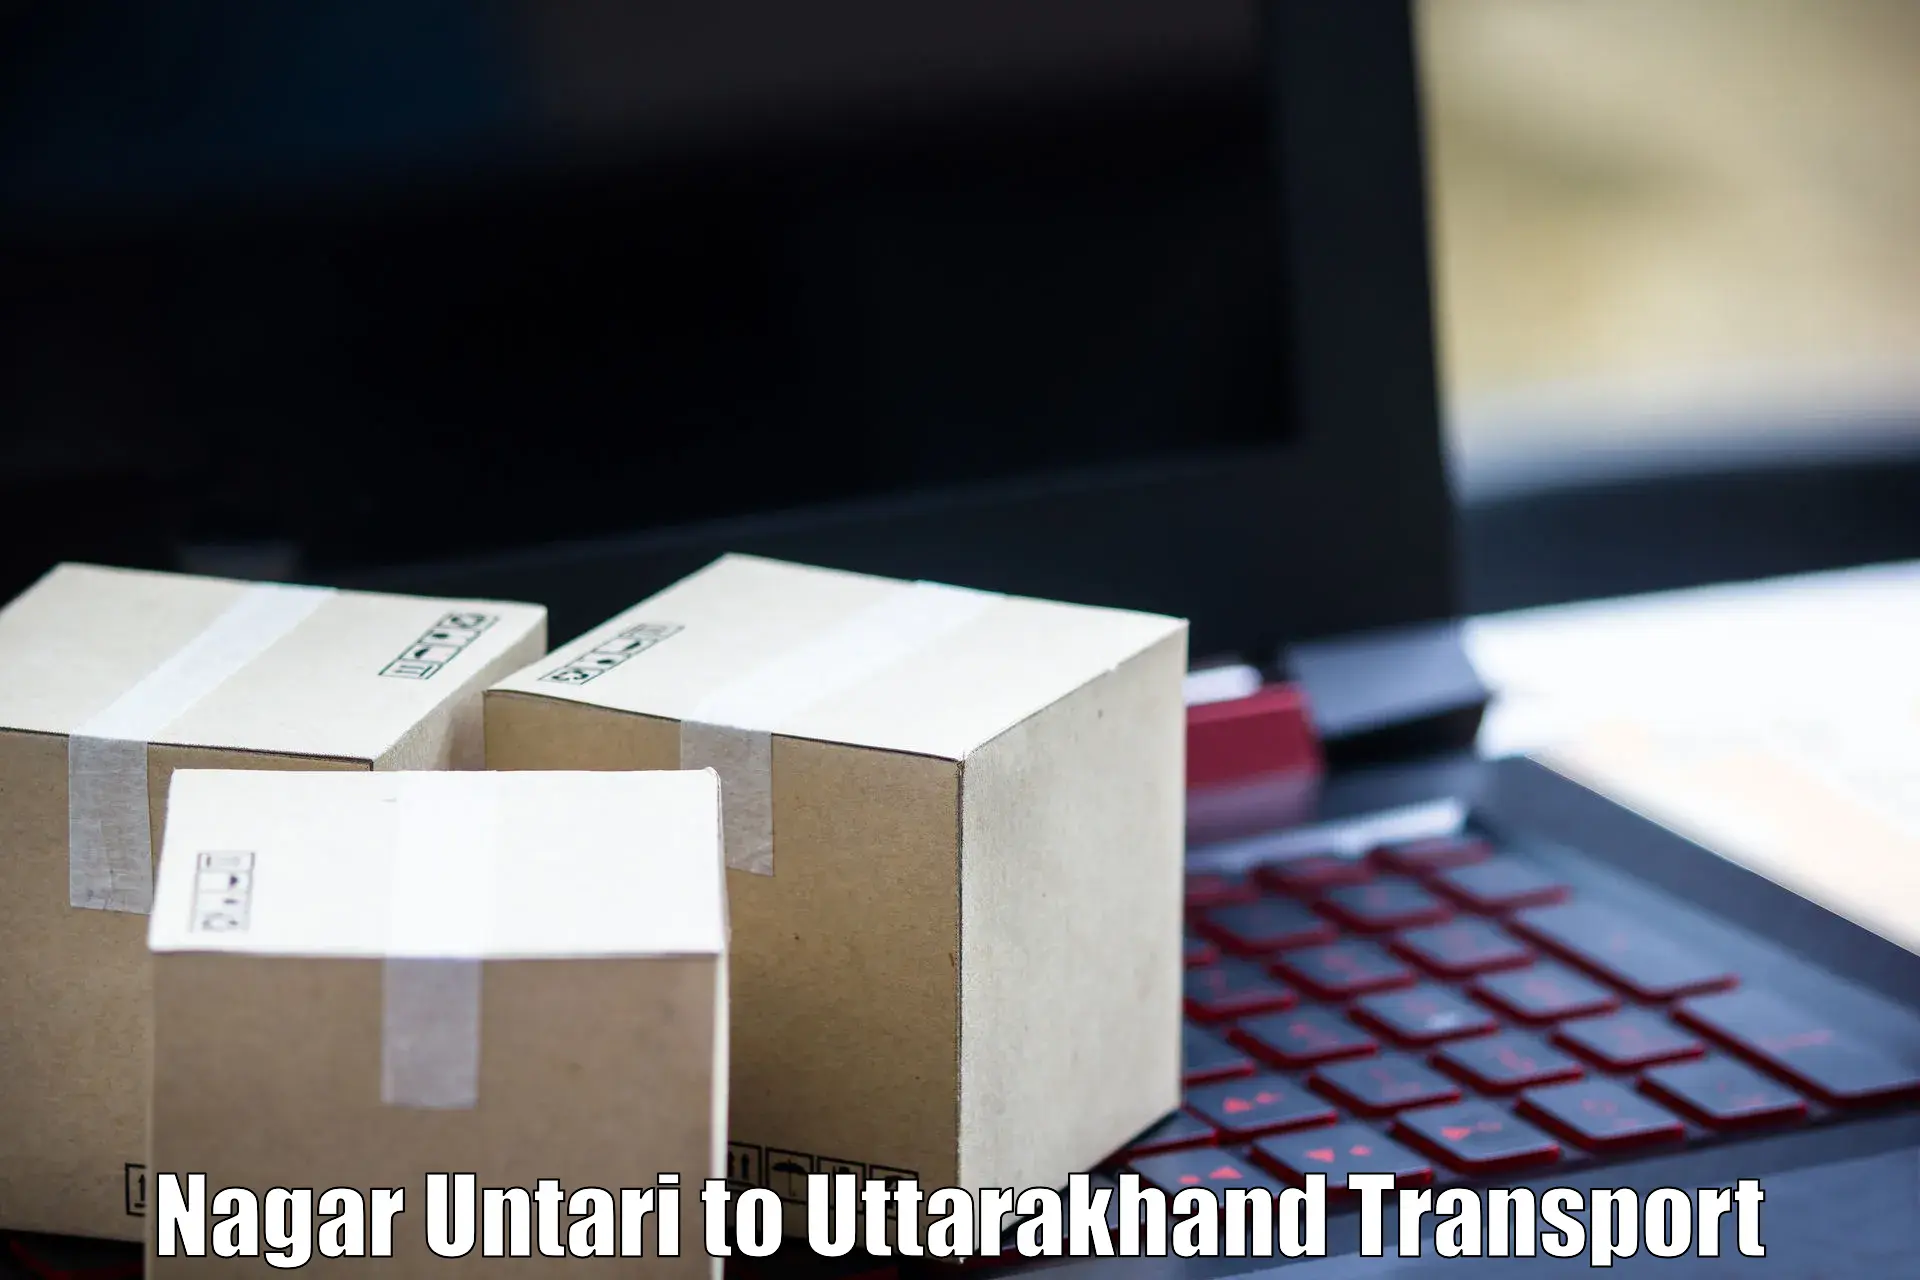 Best transport services in India Nagar Untari to Uttarakhand